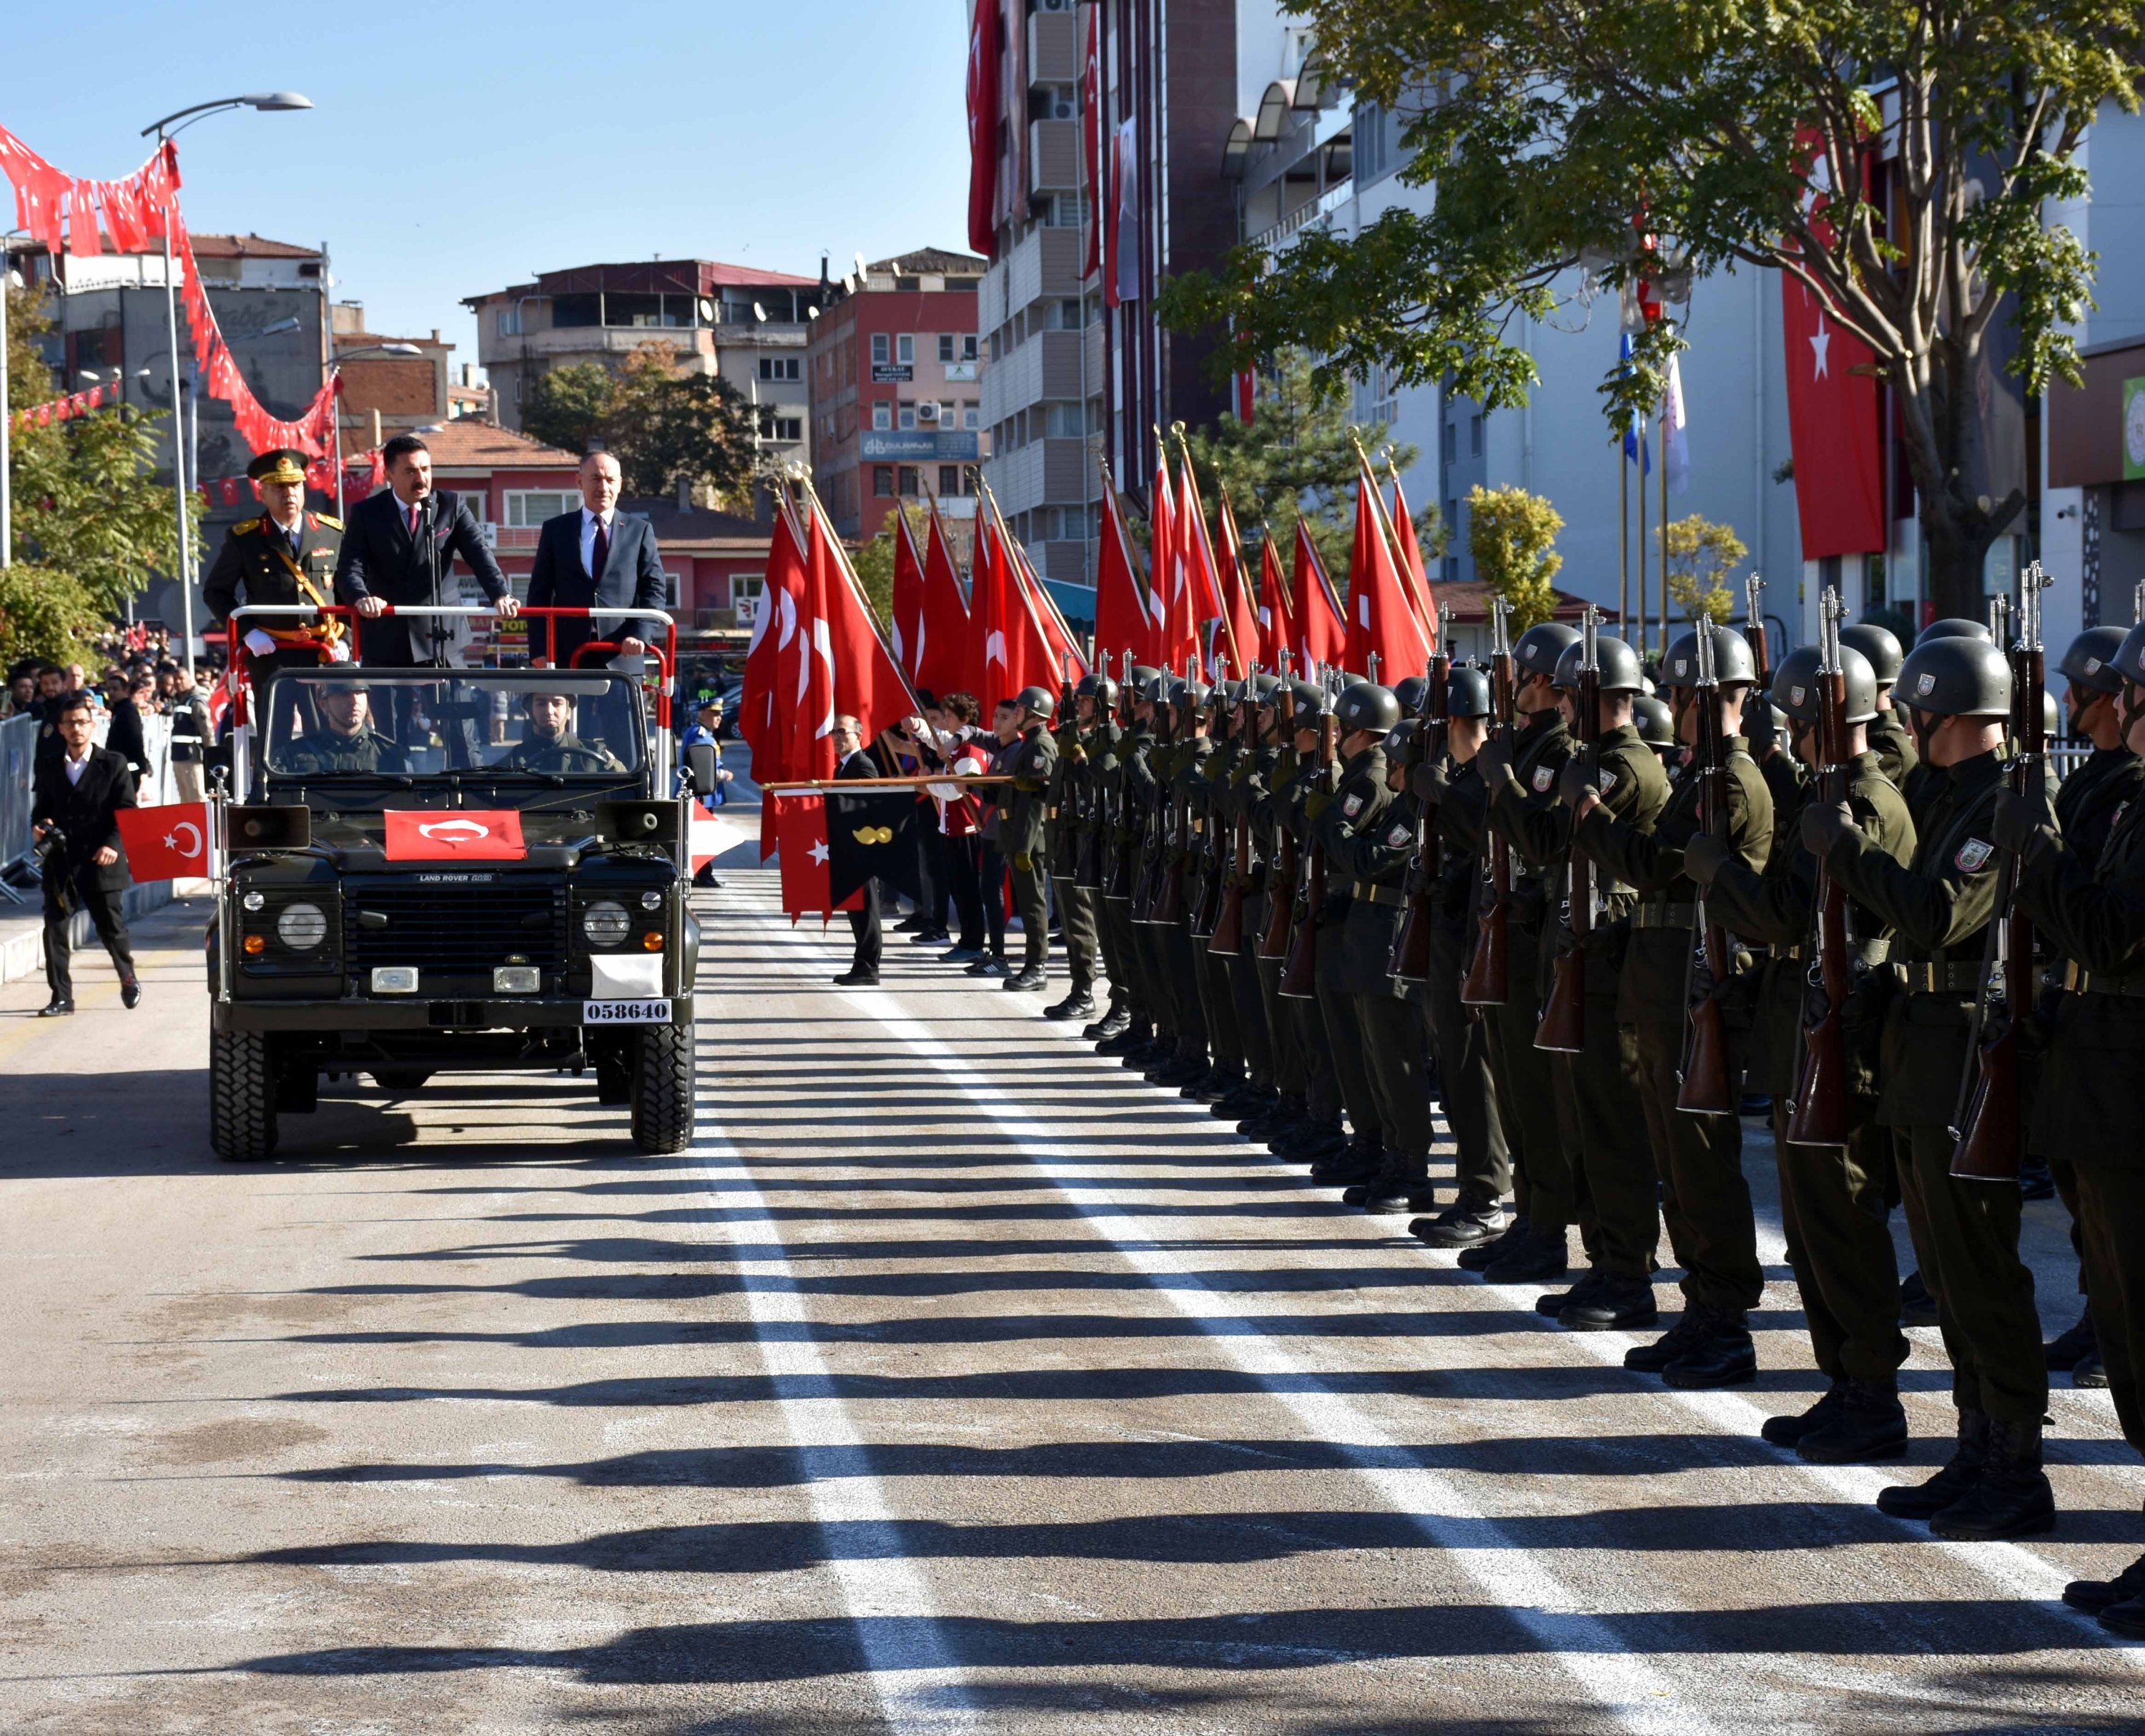 Hari Republik di Kırıkkale dirayakan dengan upacara yang diadakan di Jalan Fevzi akmak.  Sebuah parade iring-iringan diadakan sebagai bagian dari program, Kırıkkale, Türkiye, 29 Oktober 2022. (AA Photo)